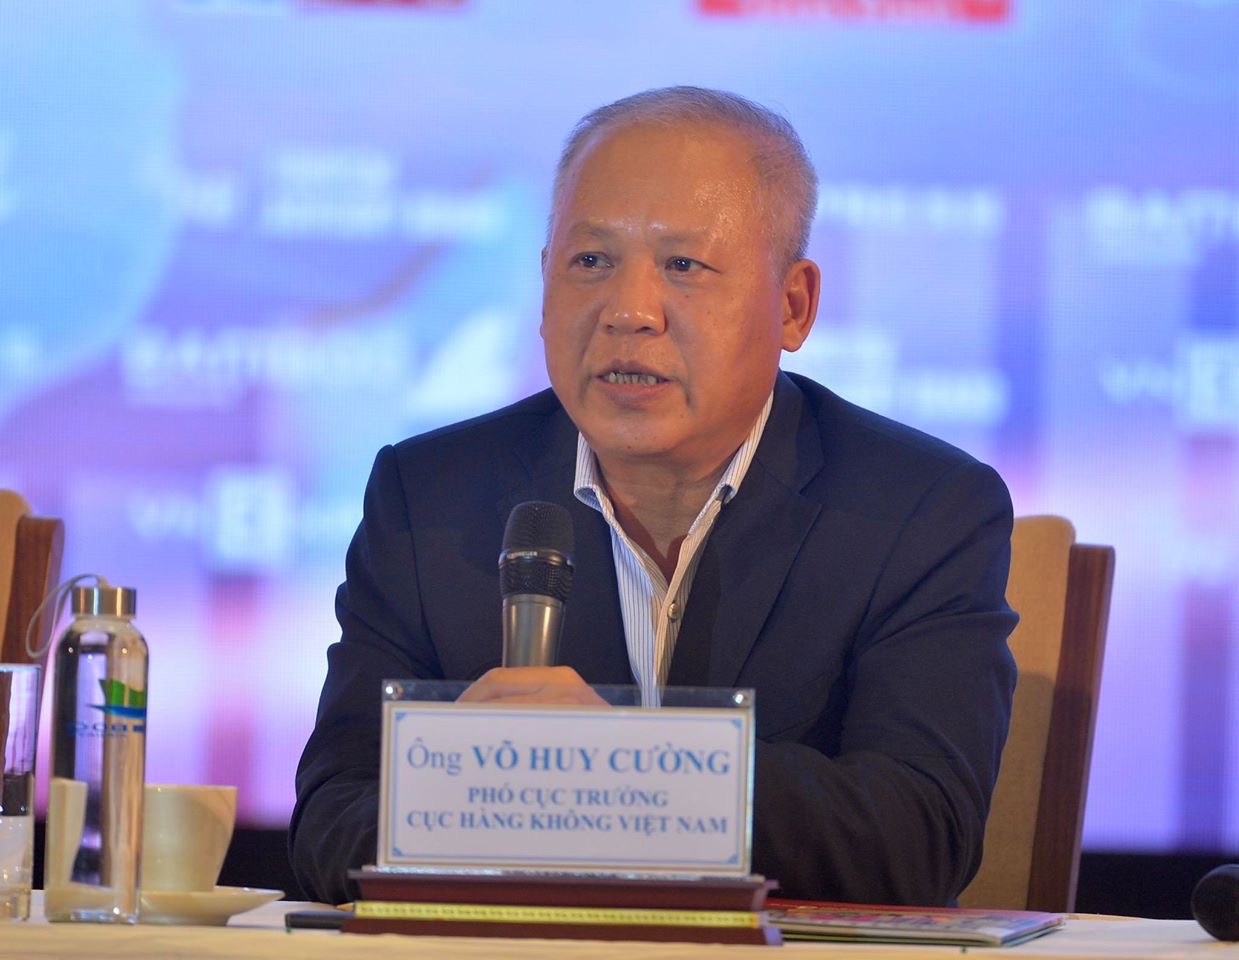 ông Võ Huy Cường, Phó cục trưởng Cục Hàng không Việt Nam cho biết, ngay trong tuần này, cơ quan quản lý sẽ triển khai sớm chỉ đạo của Bộ GTVT đối với việc thu hồi giấy phép của Công ty Hàng không Bầu trời xanh.